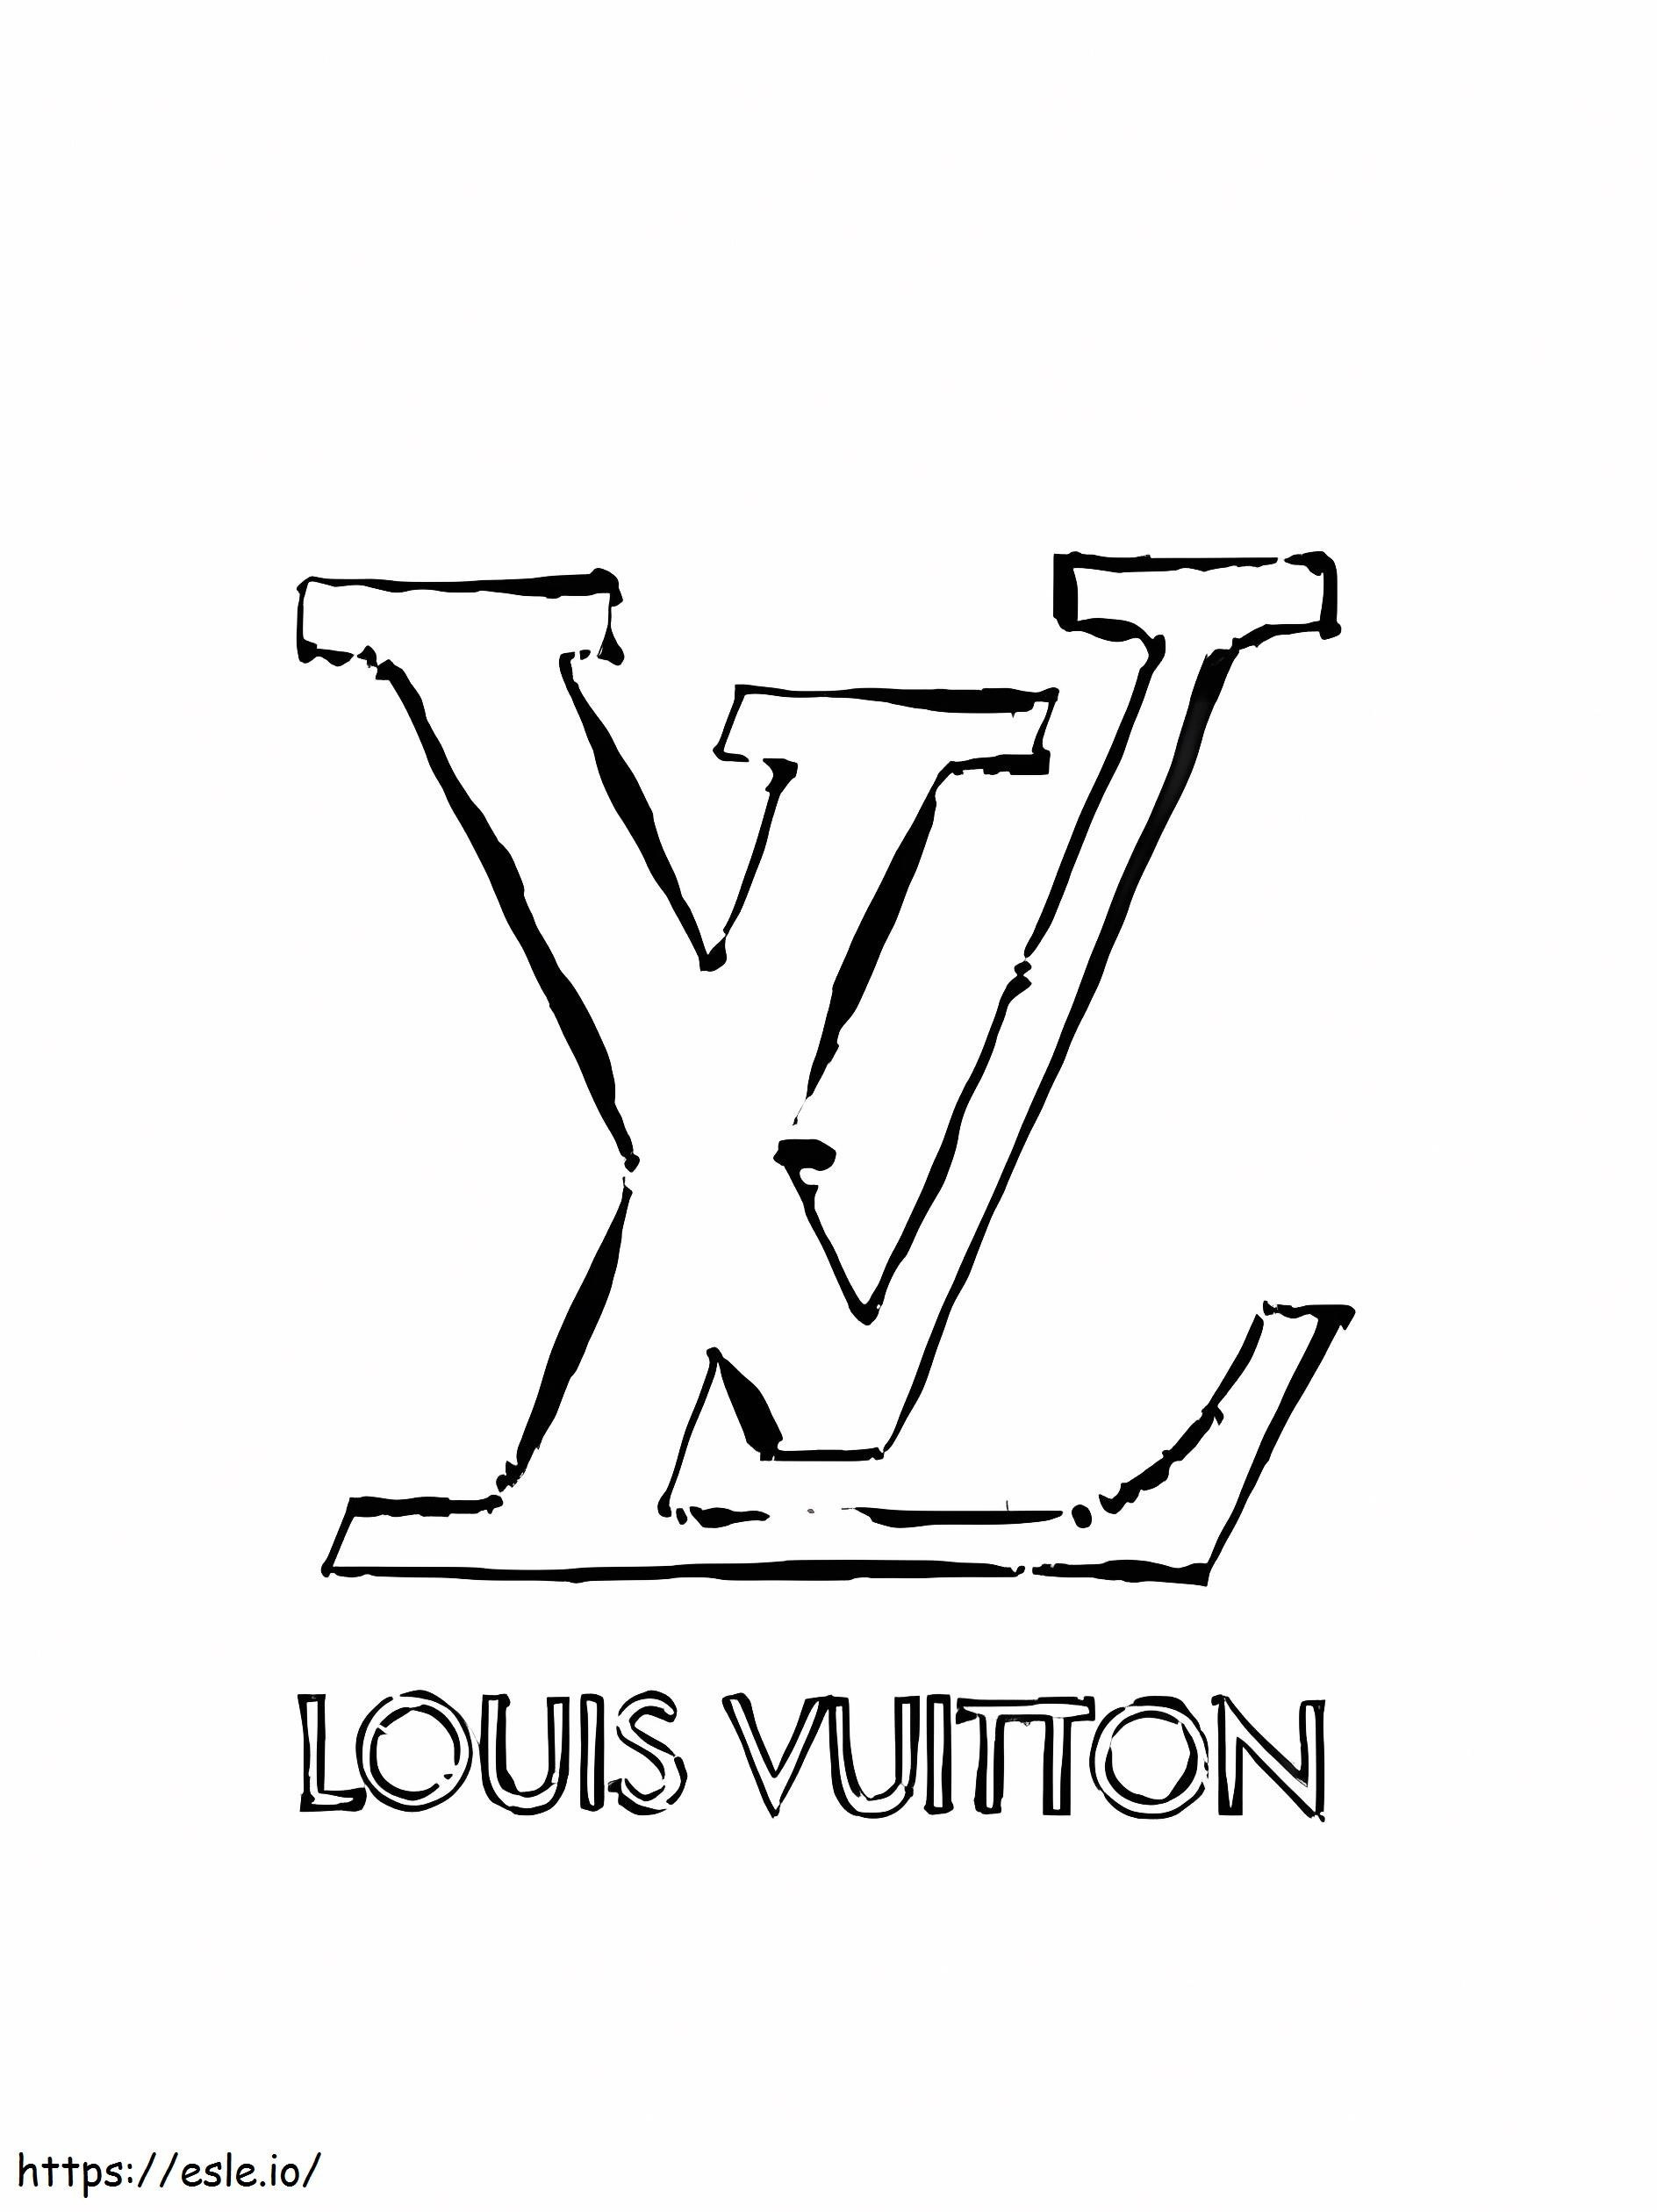 Logotipo de Louis Vuitton para colorear